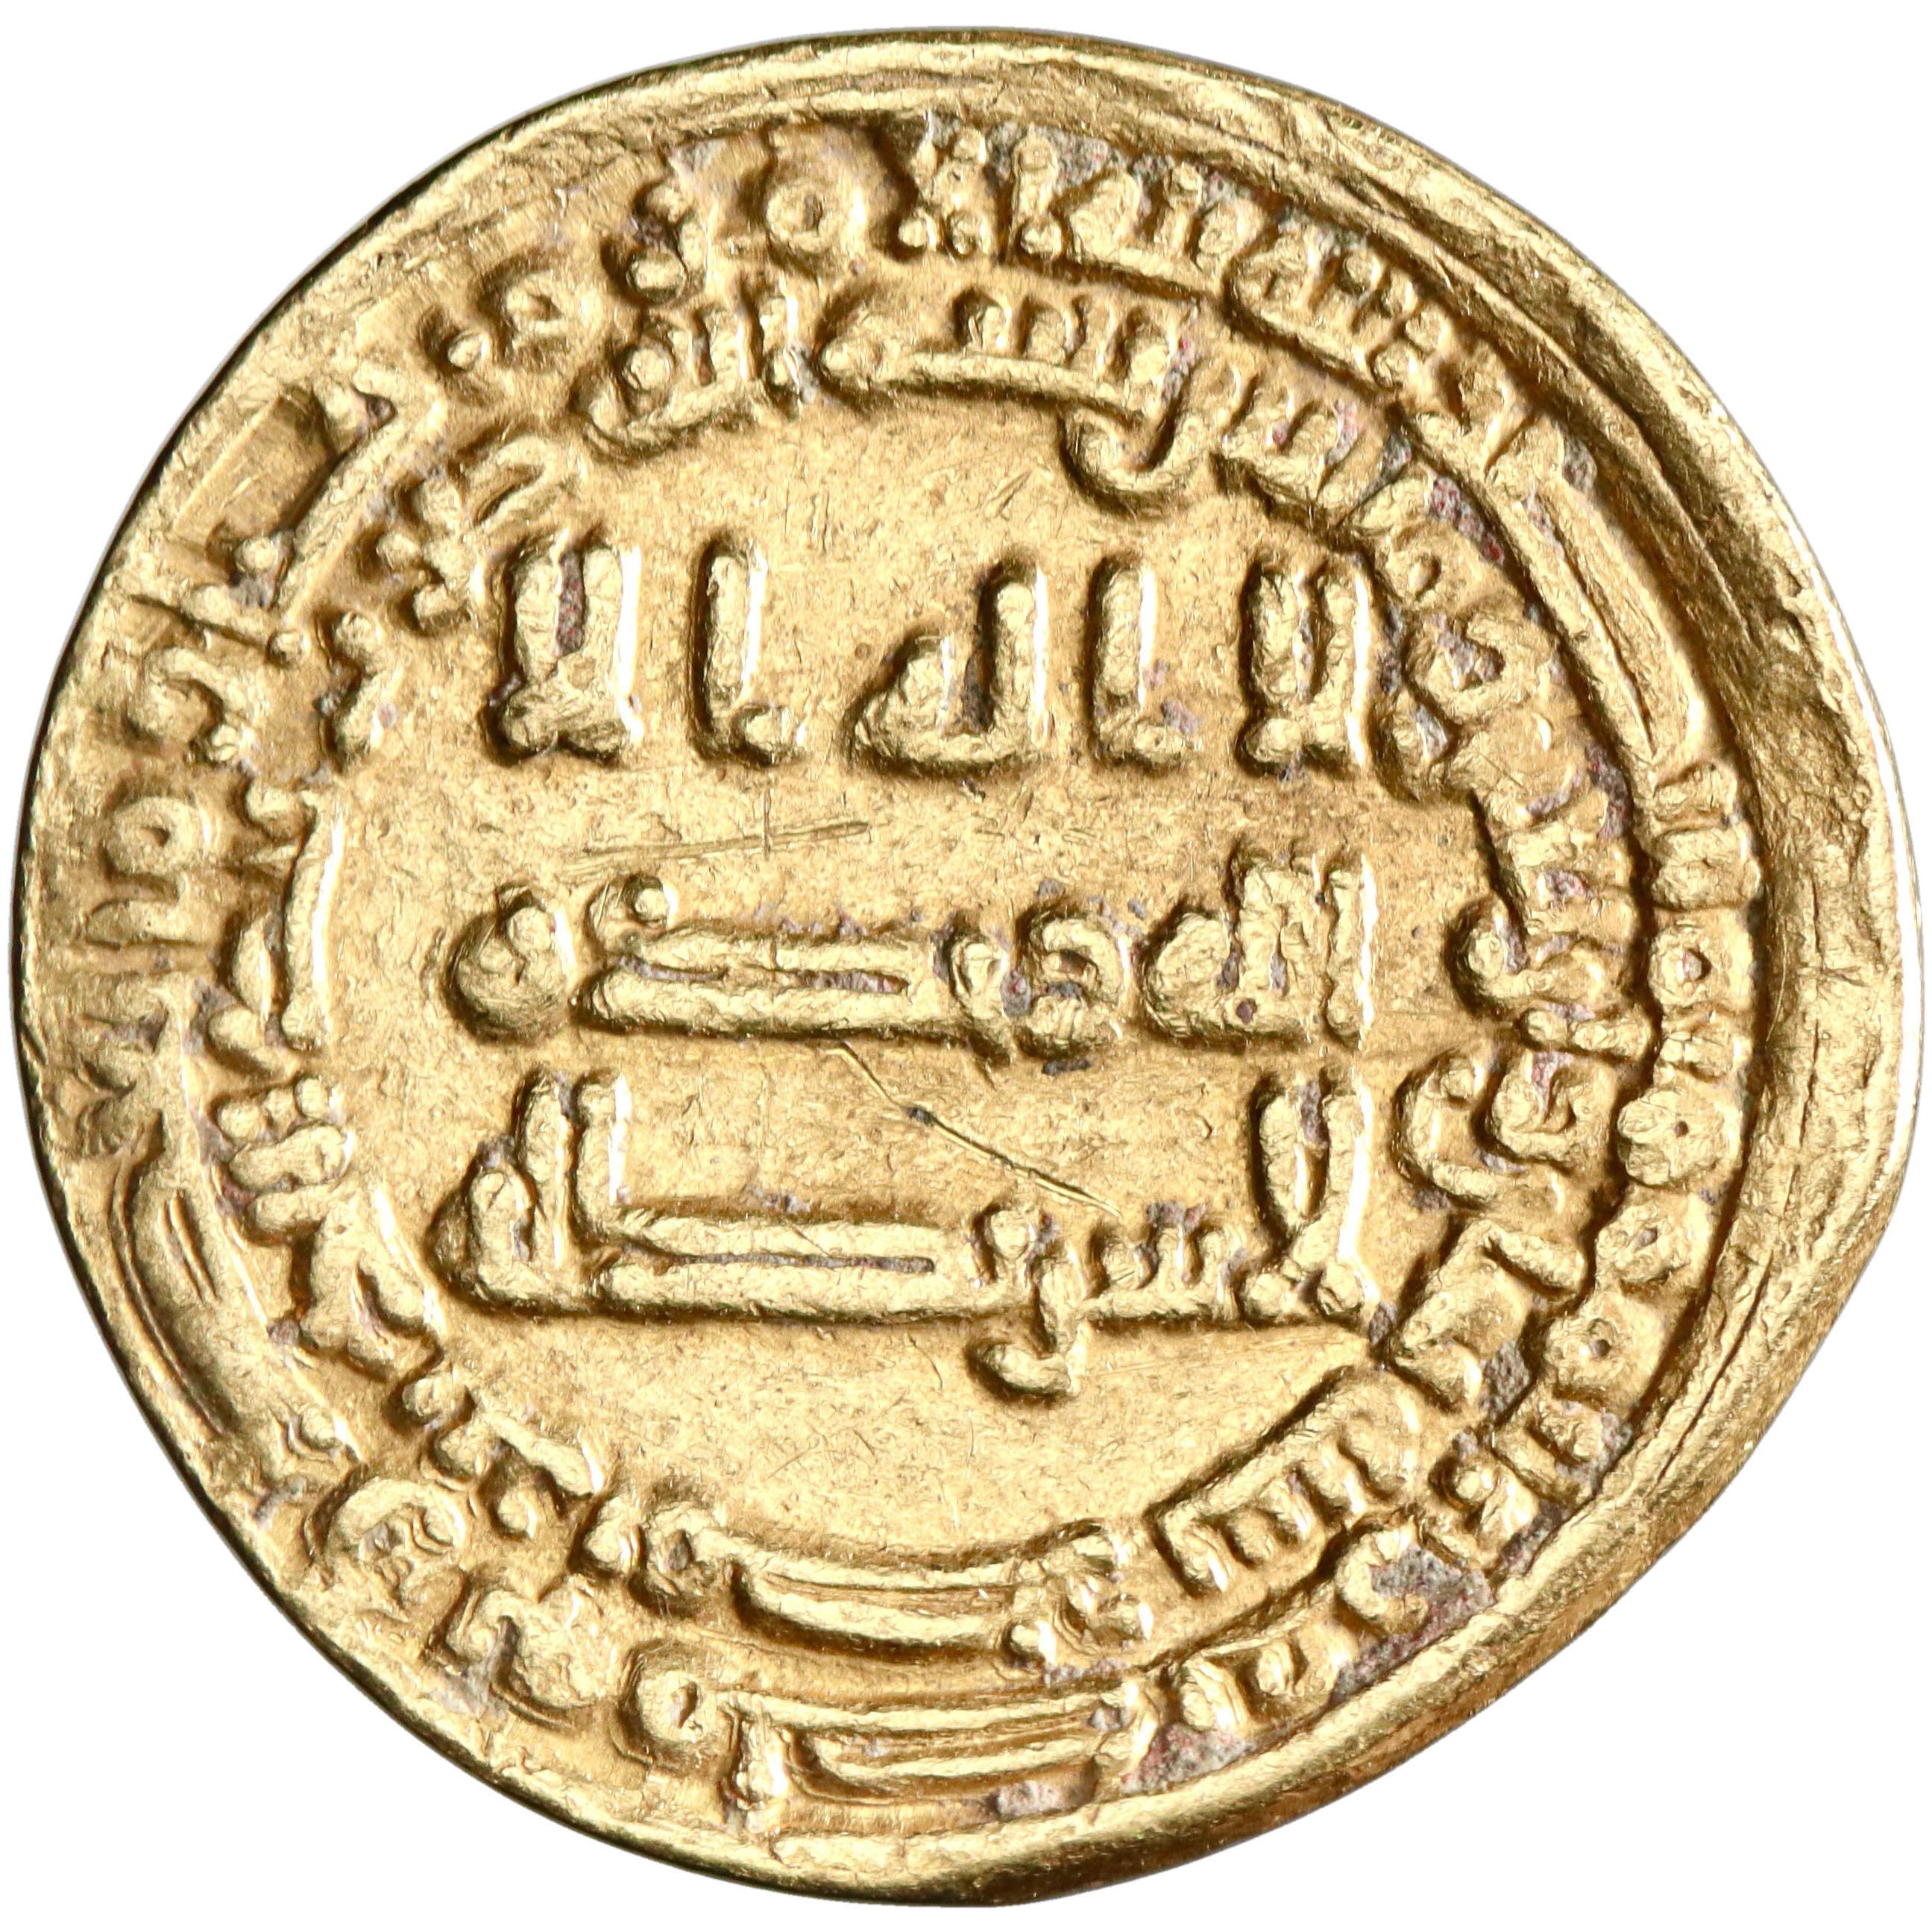 Abbasid, al-Musta'in, gold dinar, Misr (Egypt) mint, AH 248